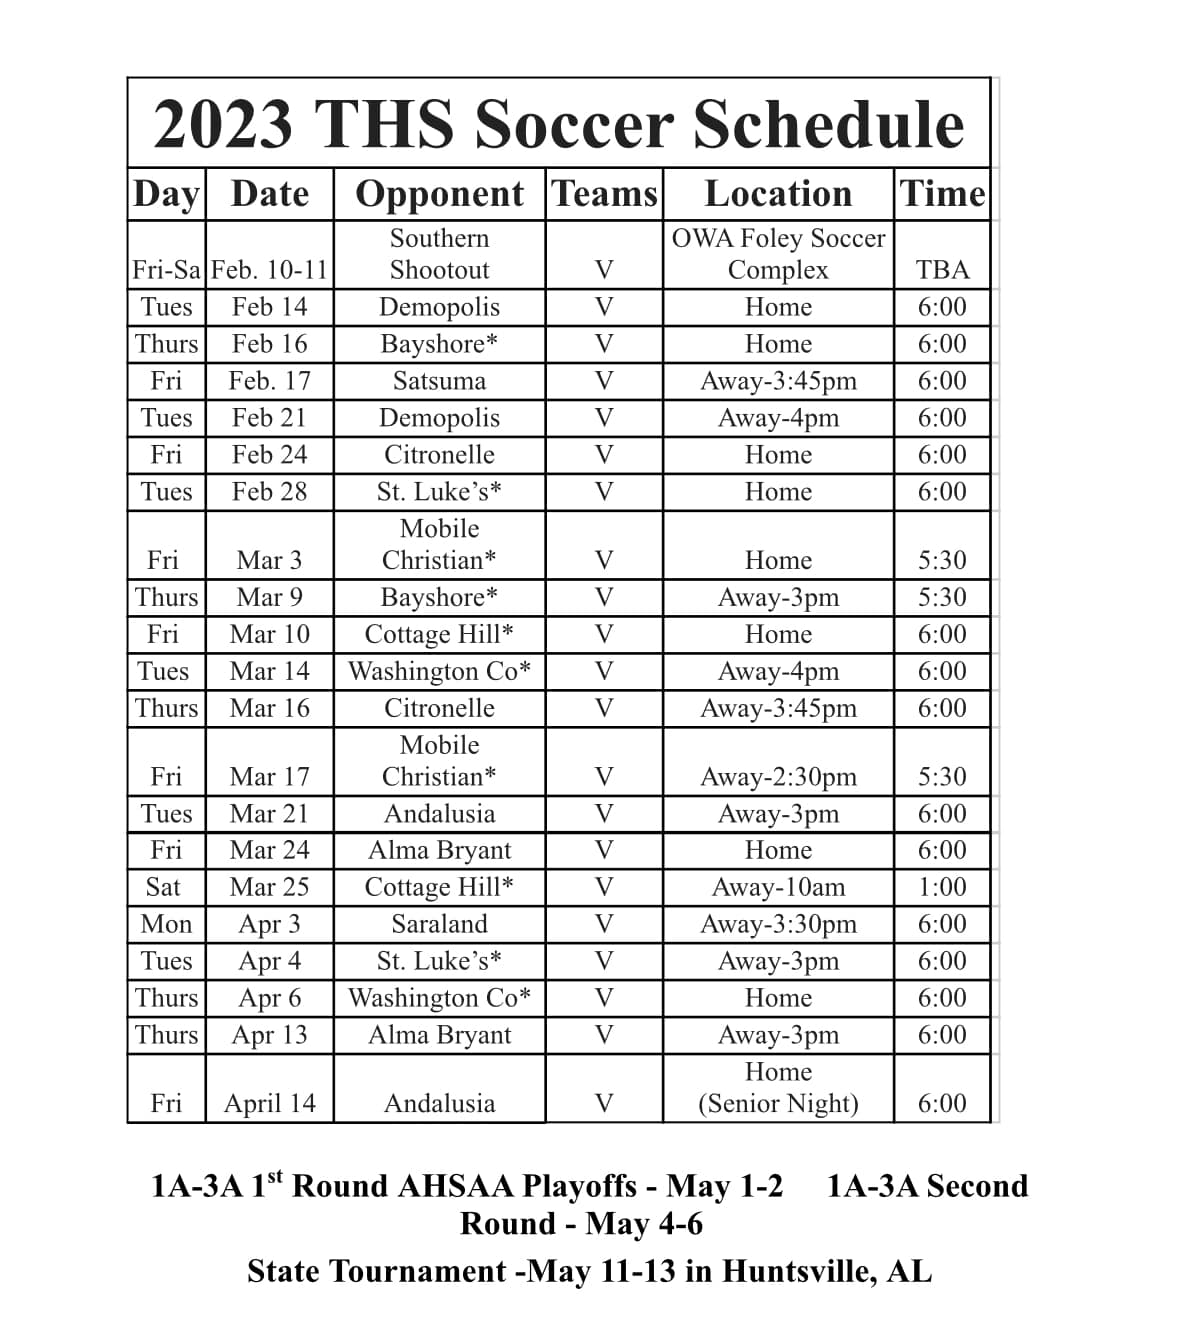 2023 THS soccer schedule